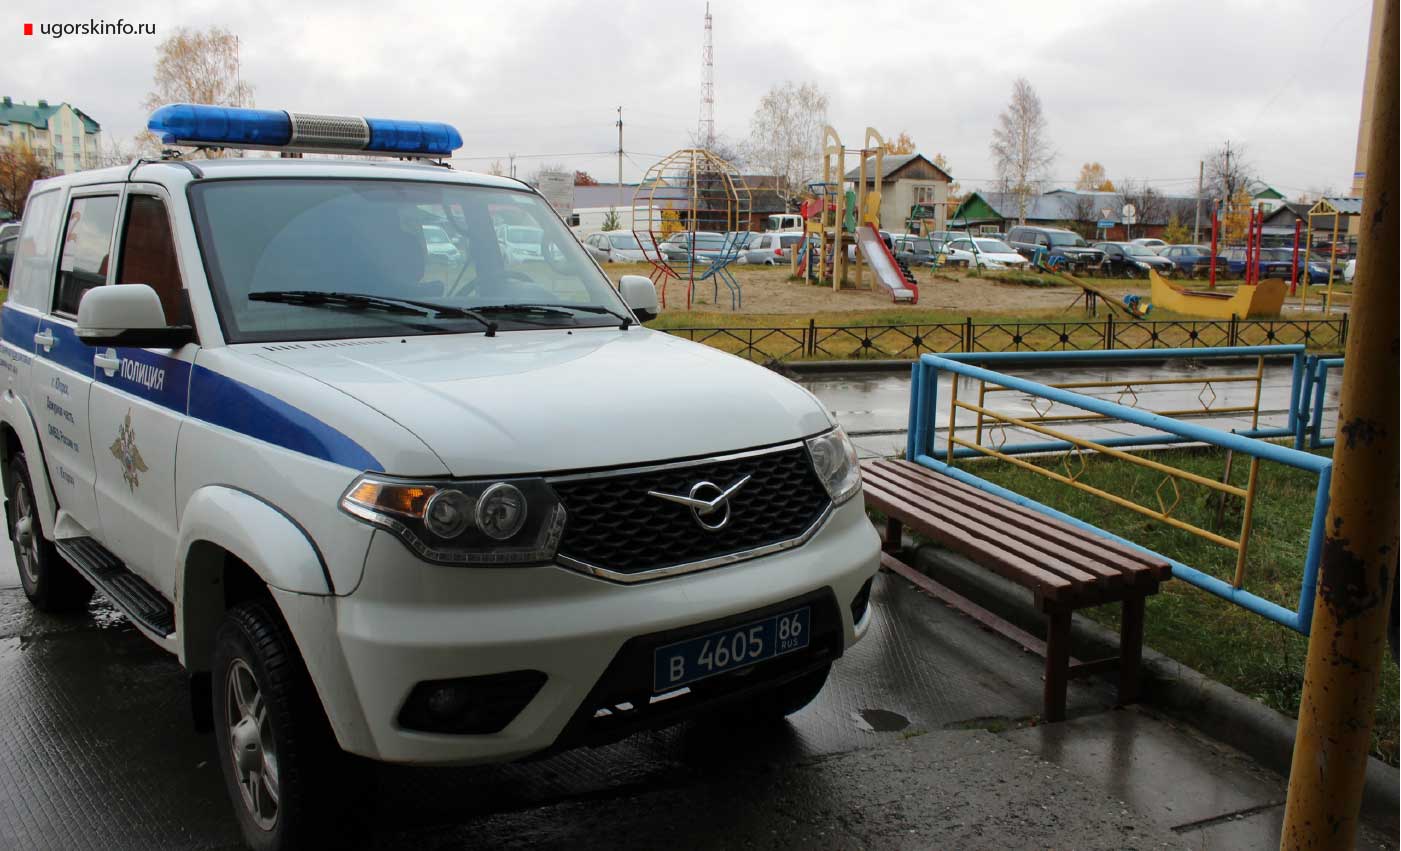 Югорские полицейские раскрыли кражу ювелирных изделий на общую сумму 100 тысяч рублей.